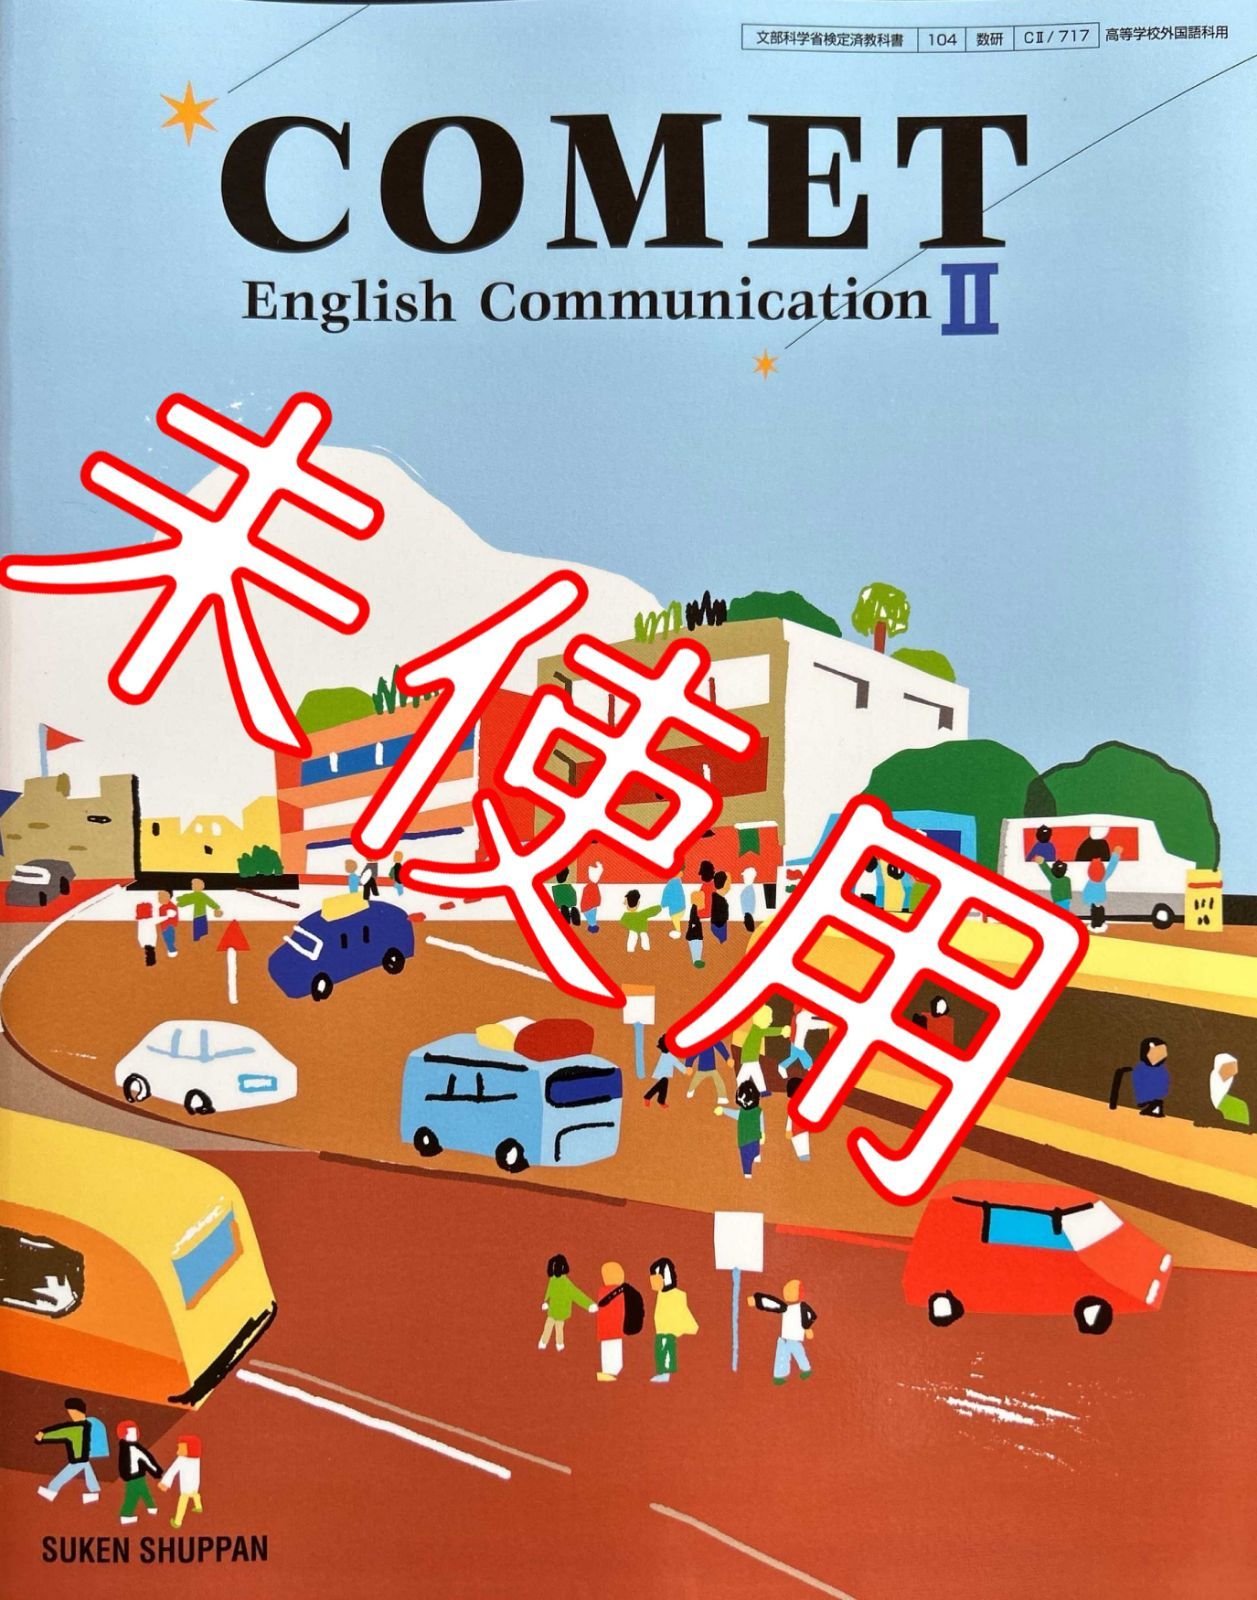 【令和6年版】COMETⅡ【CⅡ717】数研出版 コメット2 コミュニケーション英語 高校 教科書 9784410842061